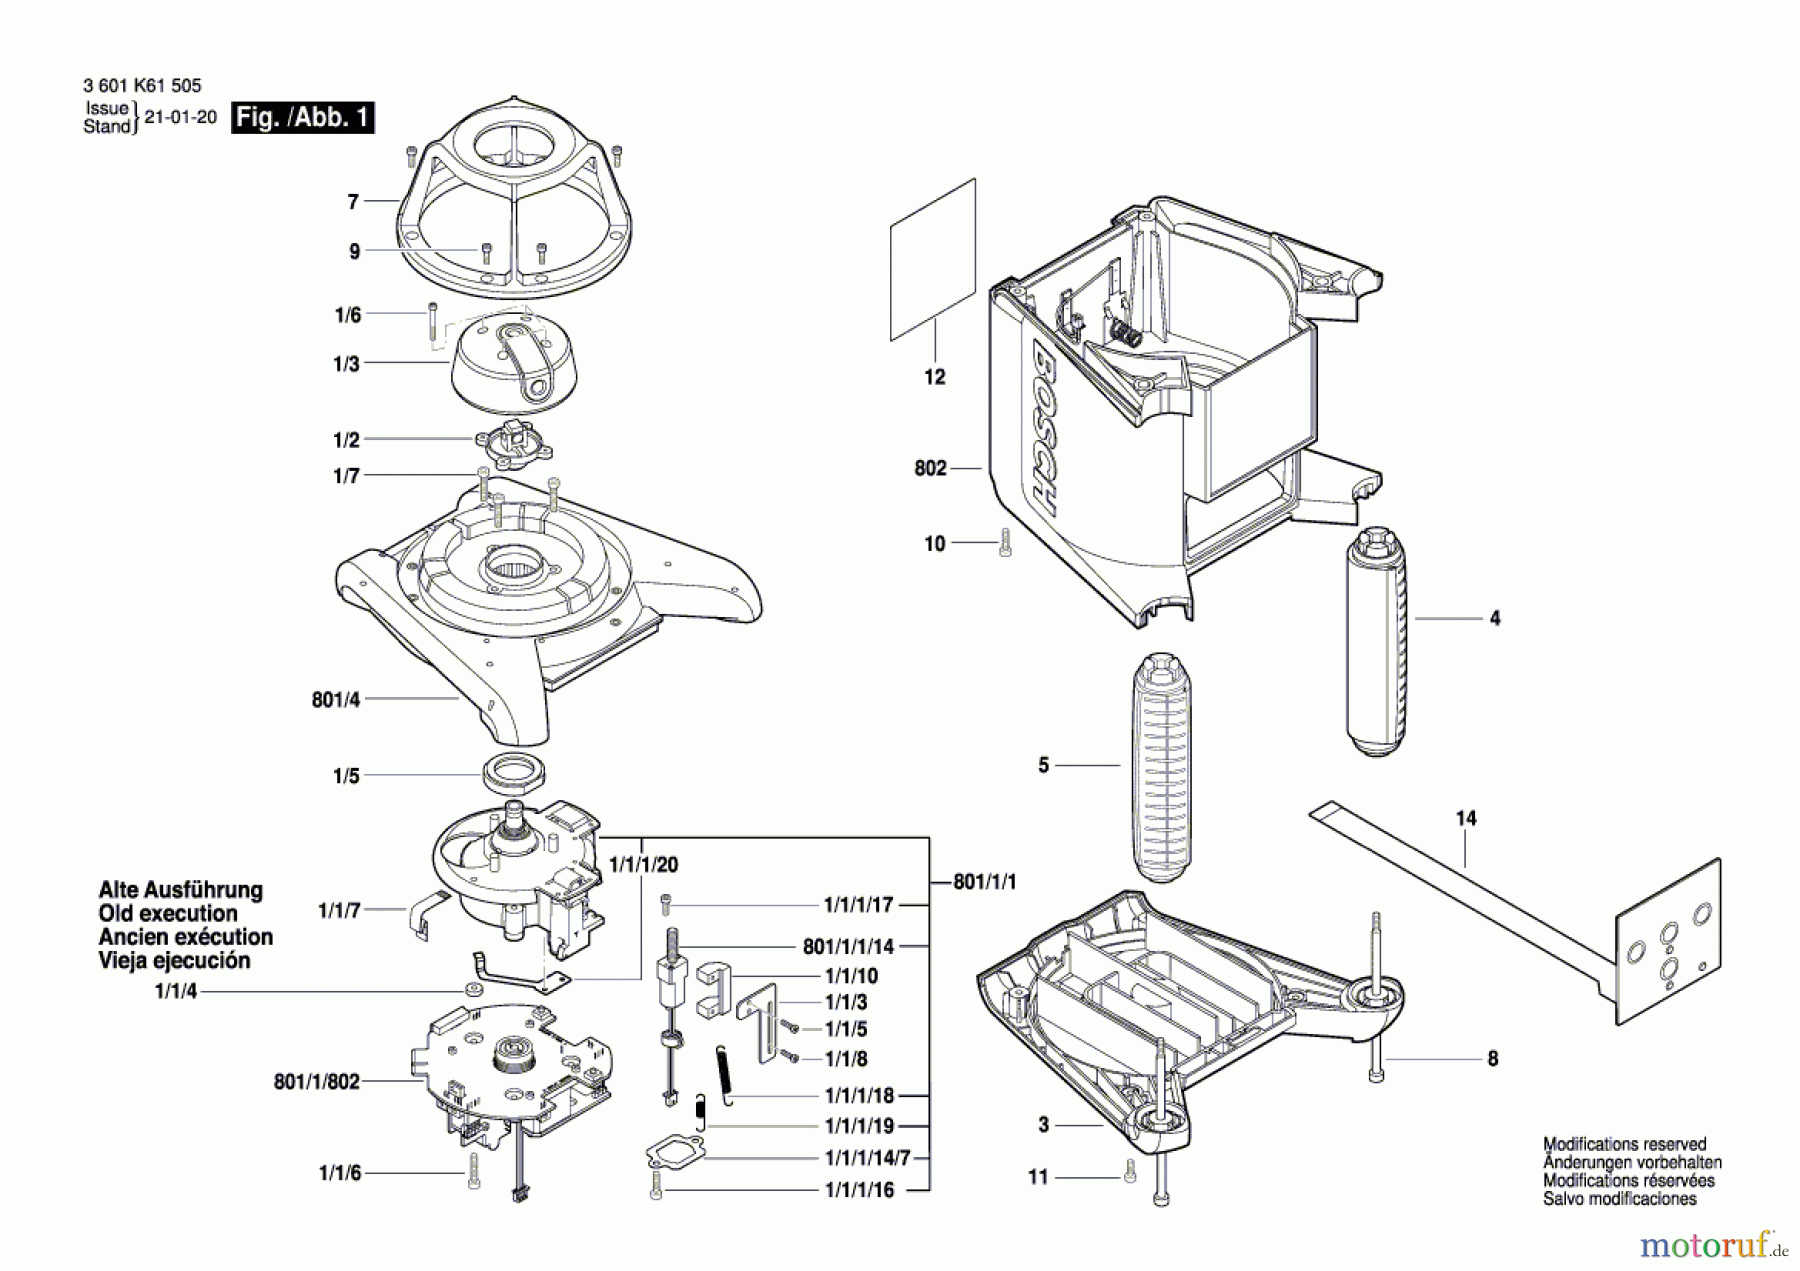  Bosch Werkzeug Baulaser GRL 300 HV Seite 1